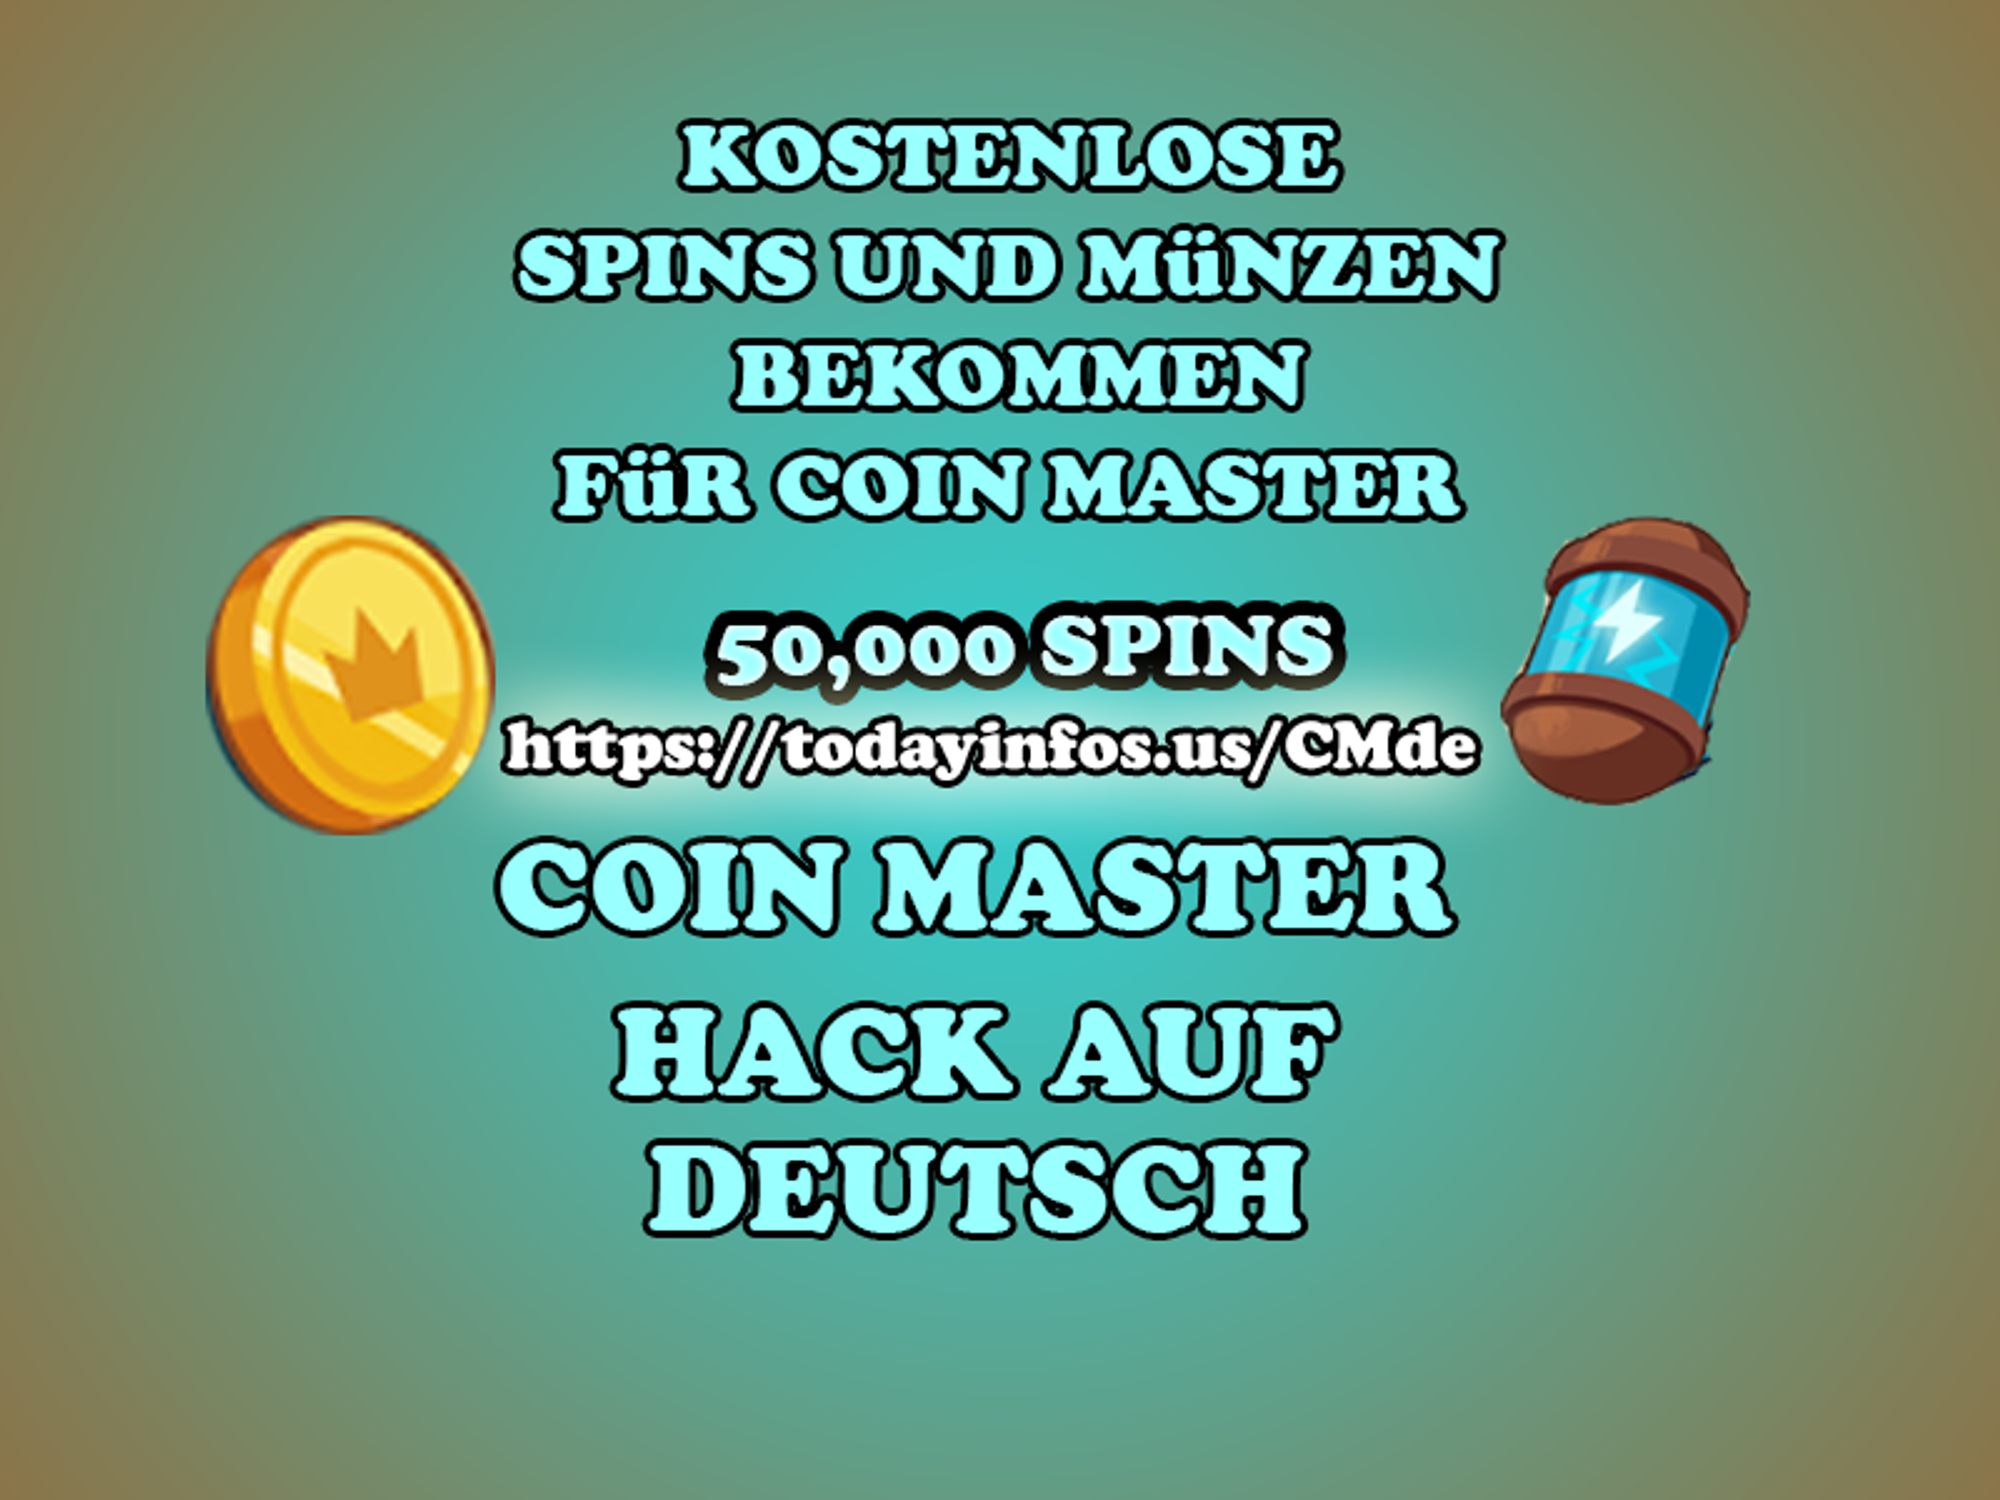 Gratis Spins Fur Coin Master Kostenlos Unendliche Spins Und Munzen Bekommen Bei Coin Master 2020